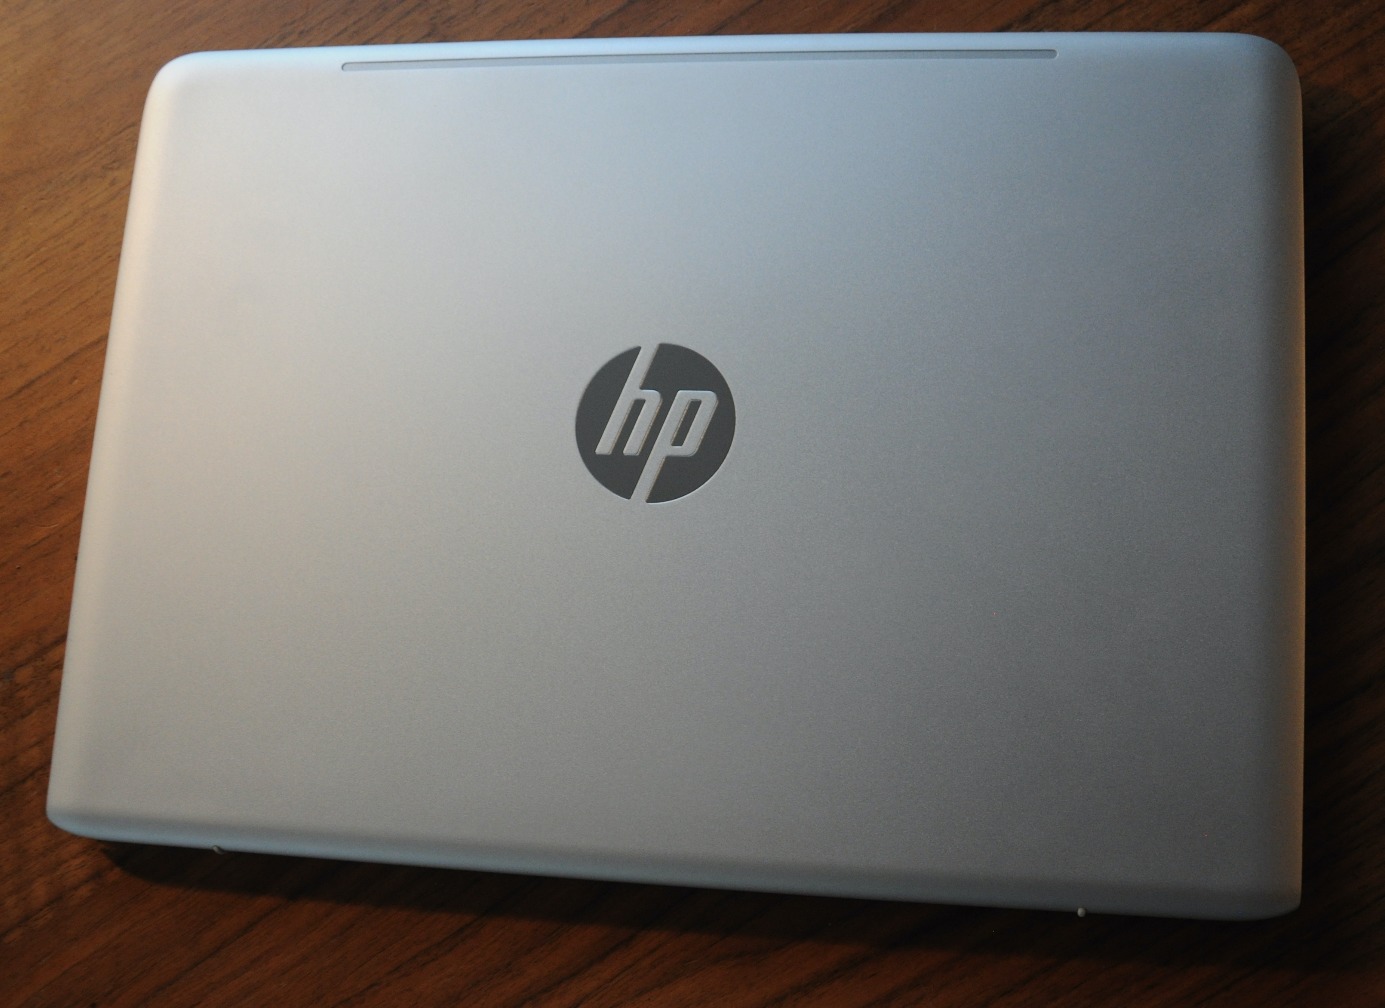 Toppen av maskinen med den kjente HP logoen i krom.